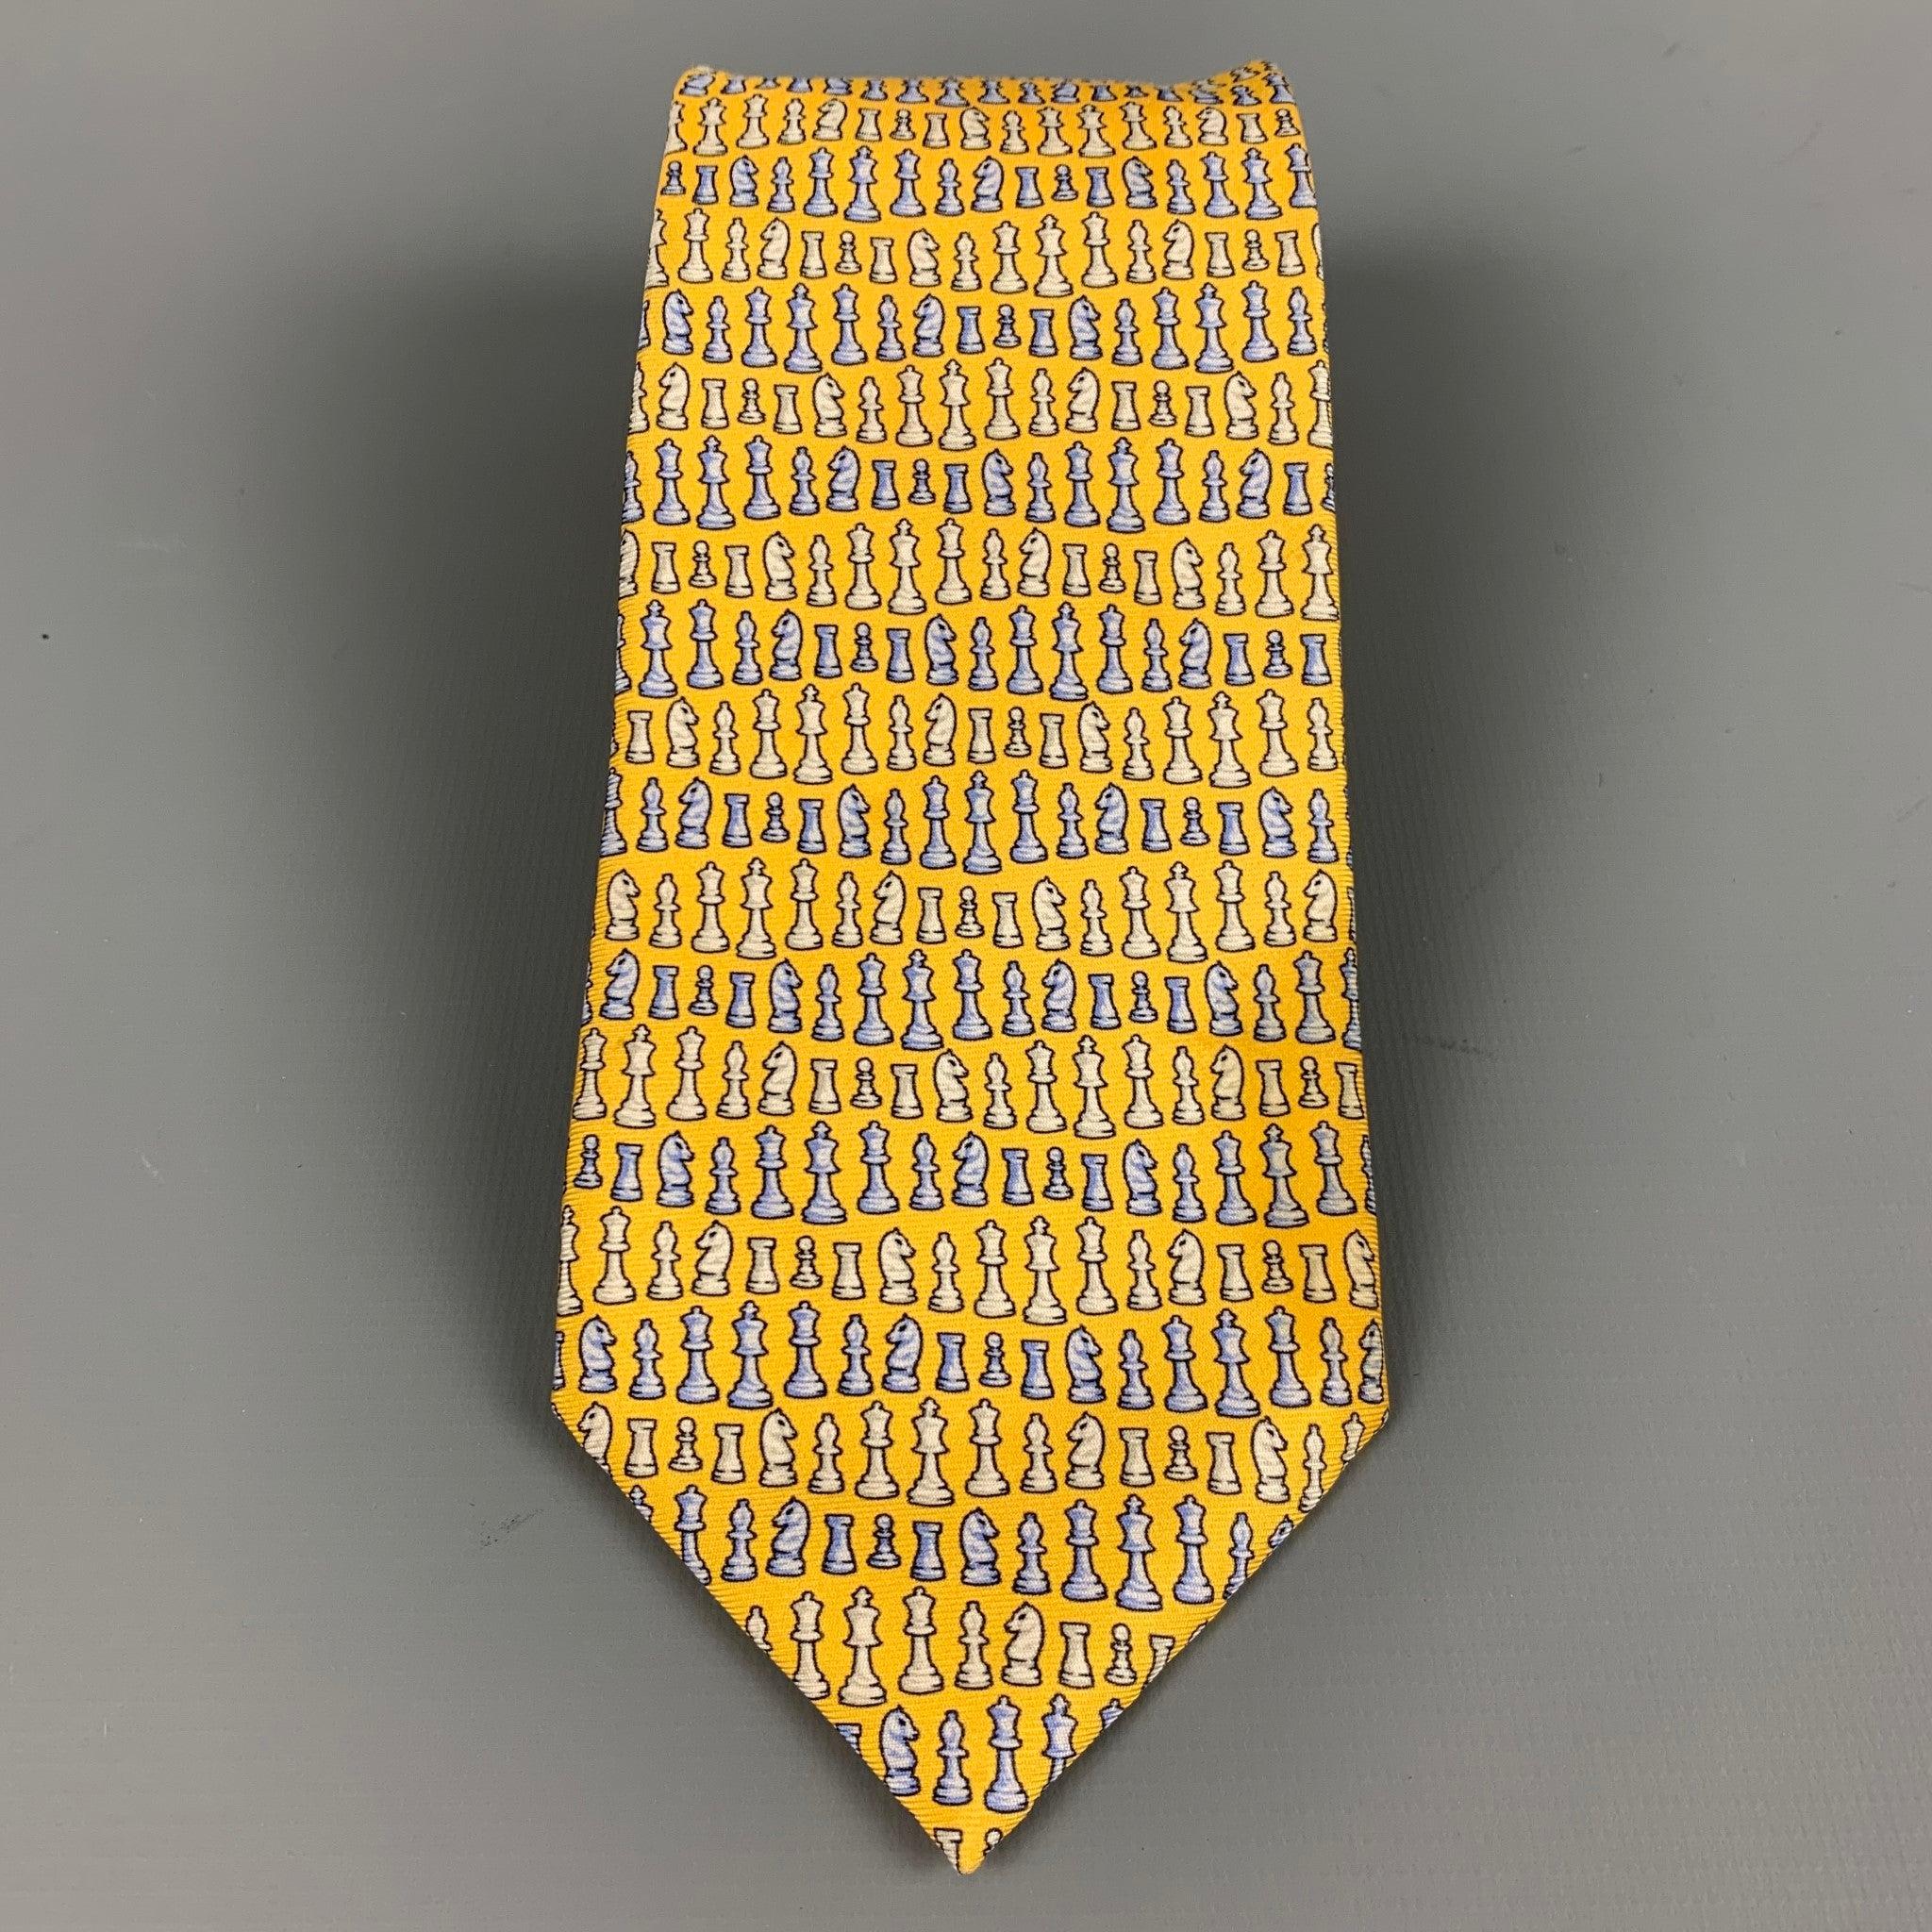 VERSACE
cravate en tissu de soie jaune avec des pièces d'échecs bleues et blanches. Fabriqué en Italie. Très bon état. Signes mineurs d'usure. 

Mesures : 
  Largeur : 3 pouces Longueur : 61 pouces 
  
  
 
Référence Sui Generis : 127312
Catégorie :